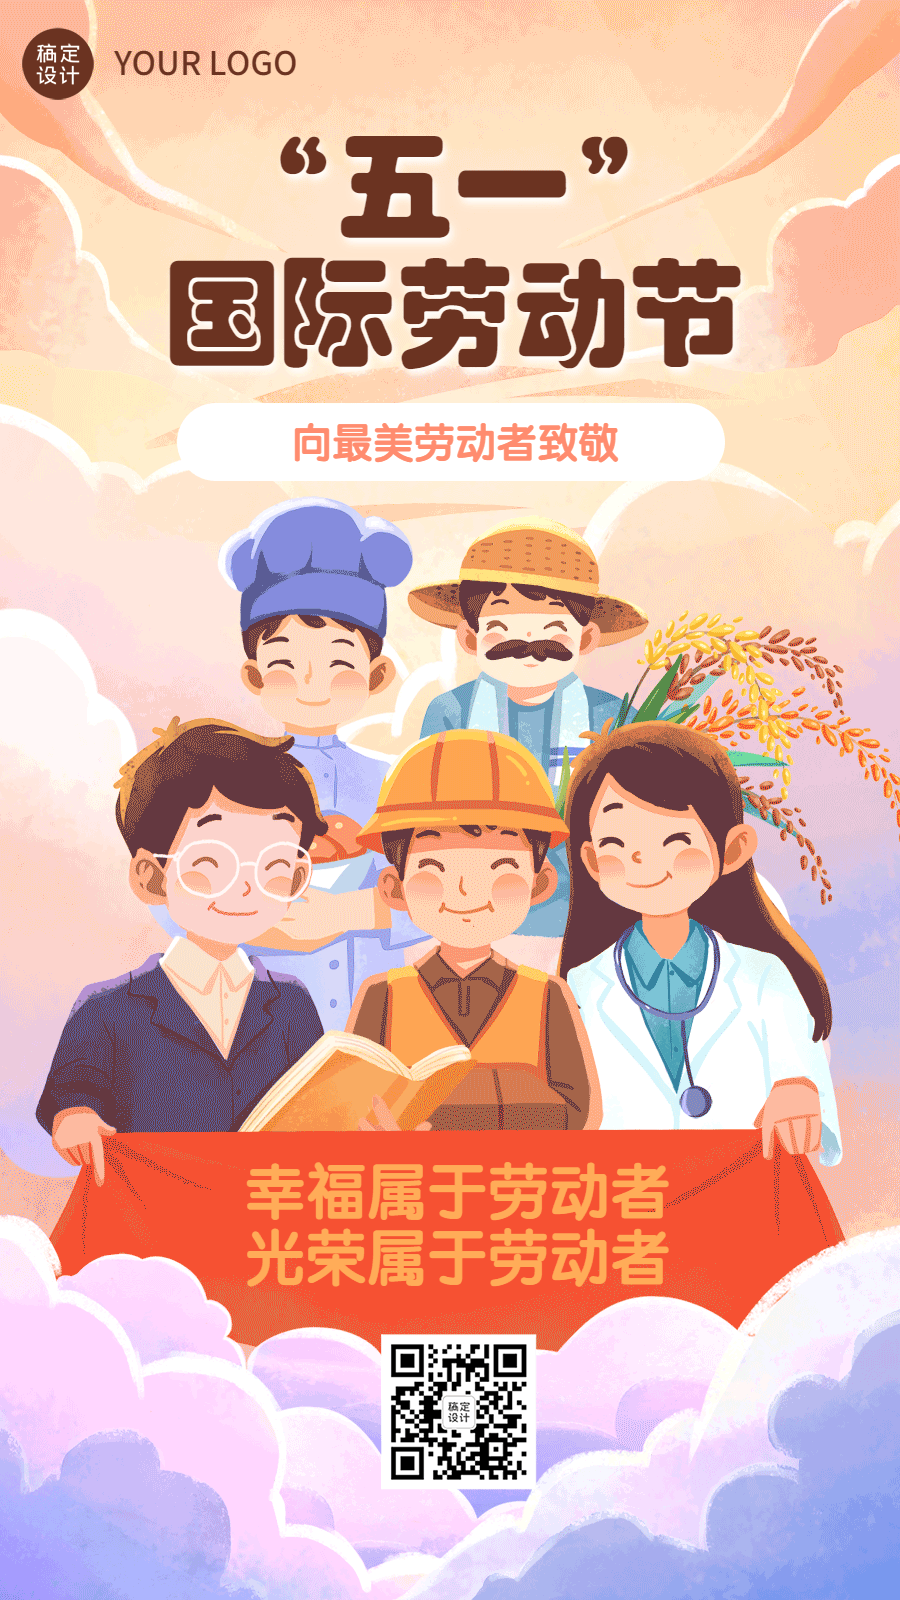 劳动节节日祝福麦穗五一插画动态手机海报